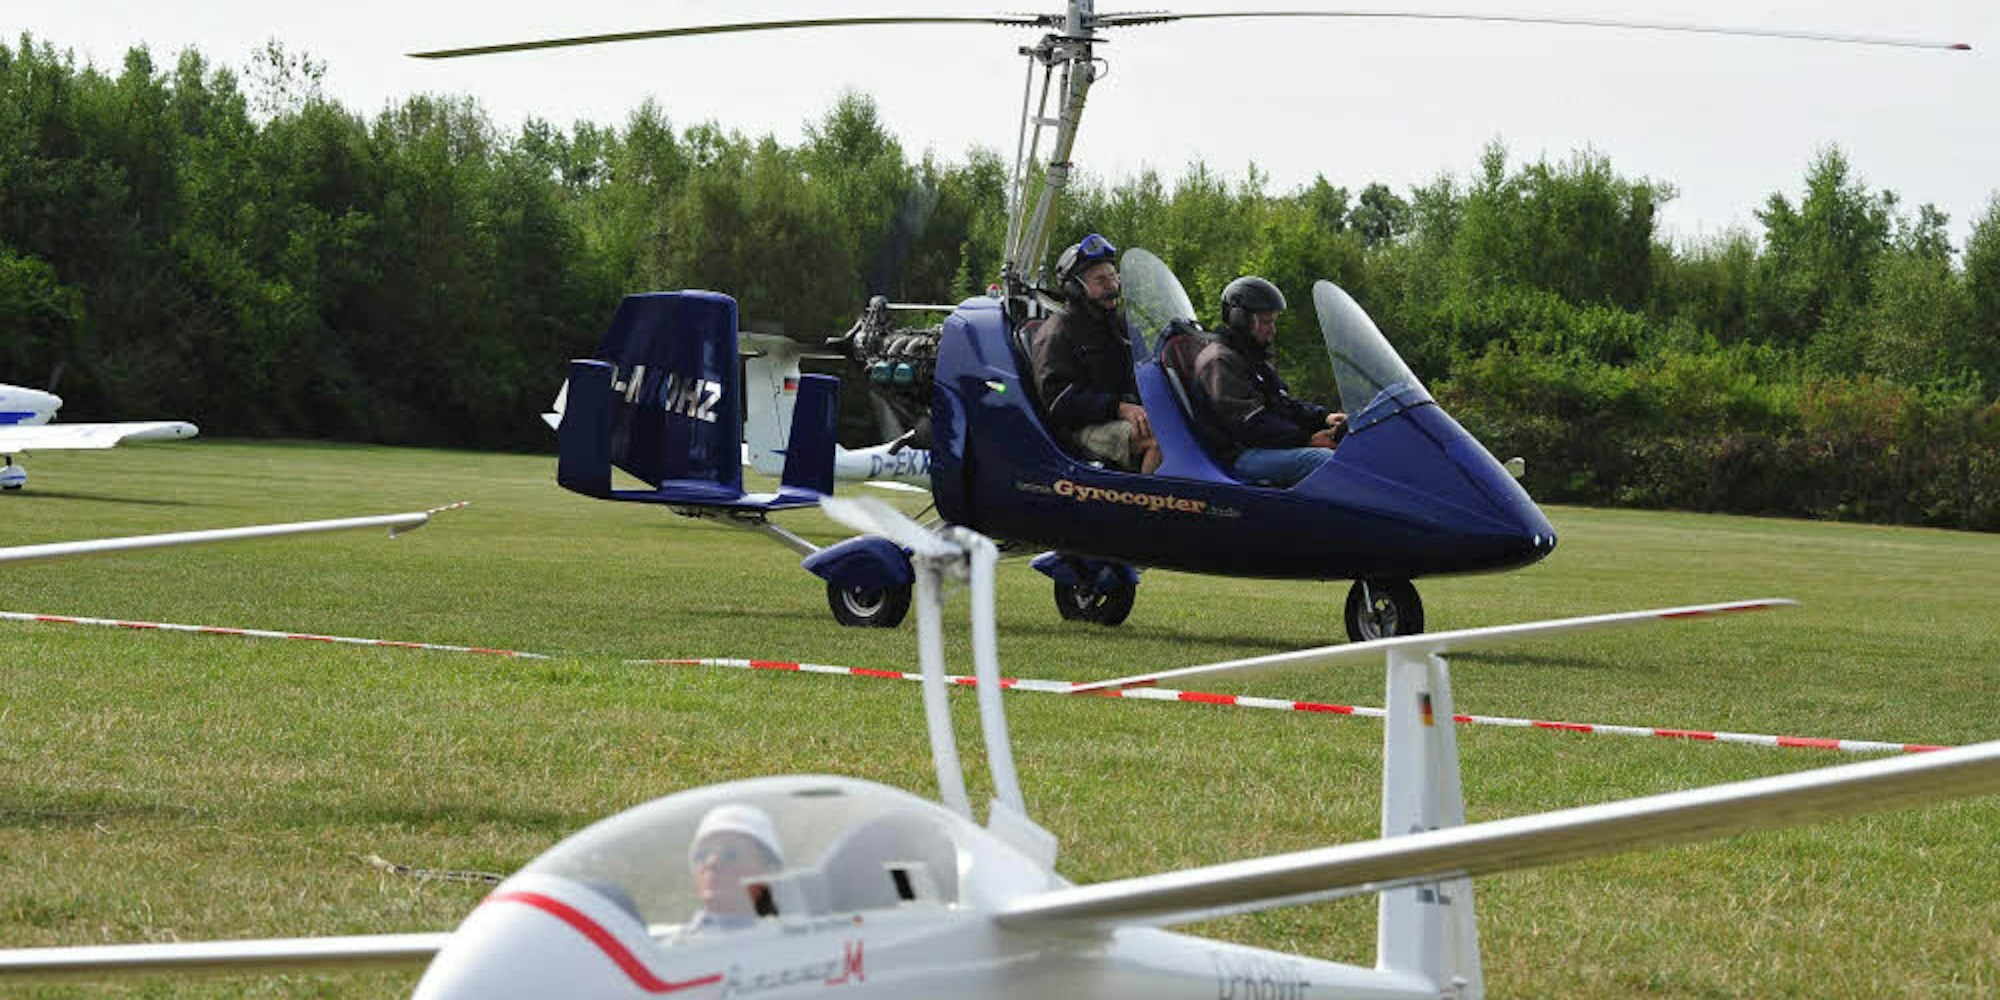 Gyrocopter, Flugmodelle und Propellermaschinen rundeten das Ensemble der Fluggeräte ab.